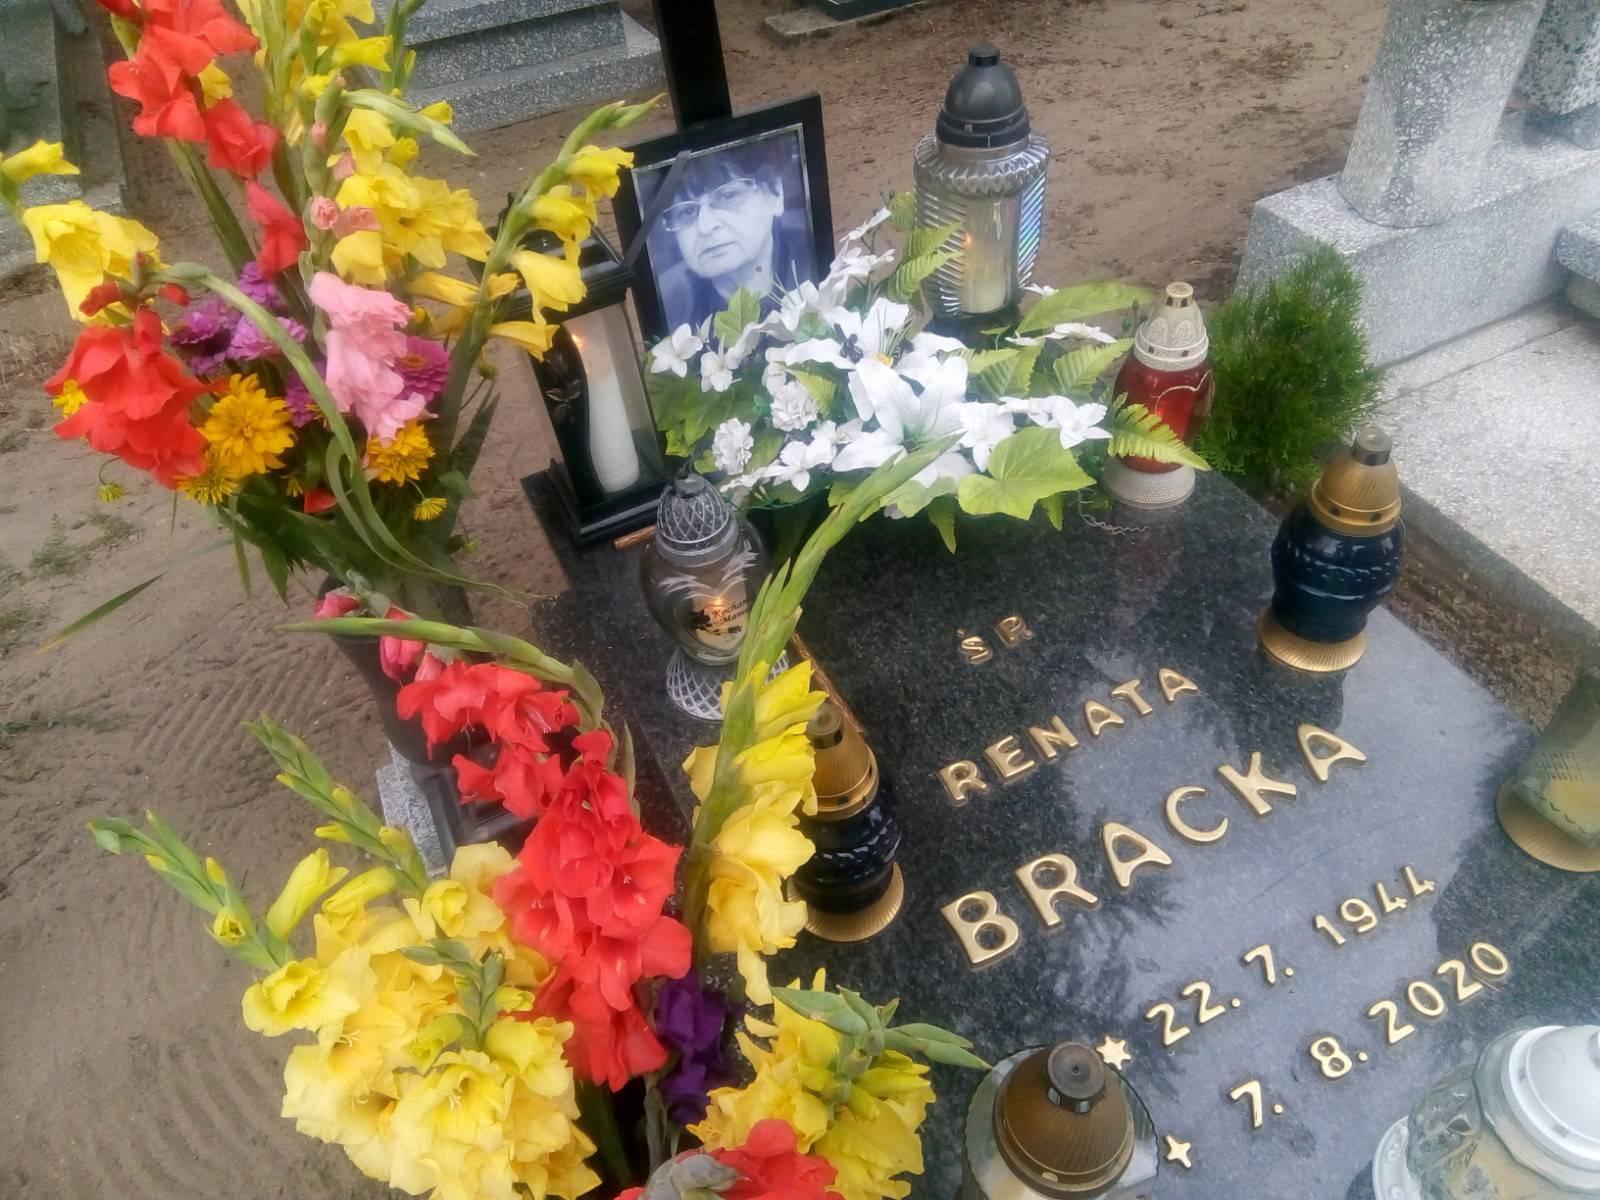 Dziś 7 sierpnia 2021 r. o godz. 8, 16 minęła 1 rocznica śmierci mojej ukochanej Mamy ś.p. Renaty Bracka, która zmarła w więcborskim szpitalu i spoczywa na cmentarzu komunalnym w Więcborku, gdzie obecnie się znajduję – syn Tomasz Roman Bracka 